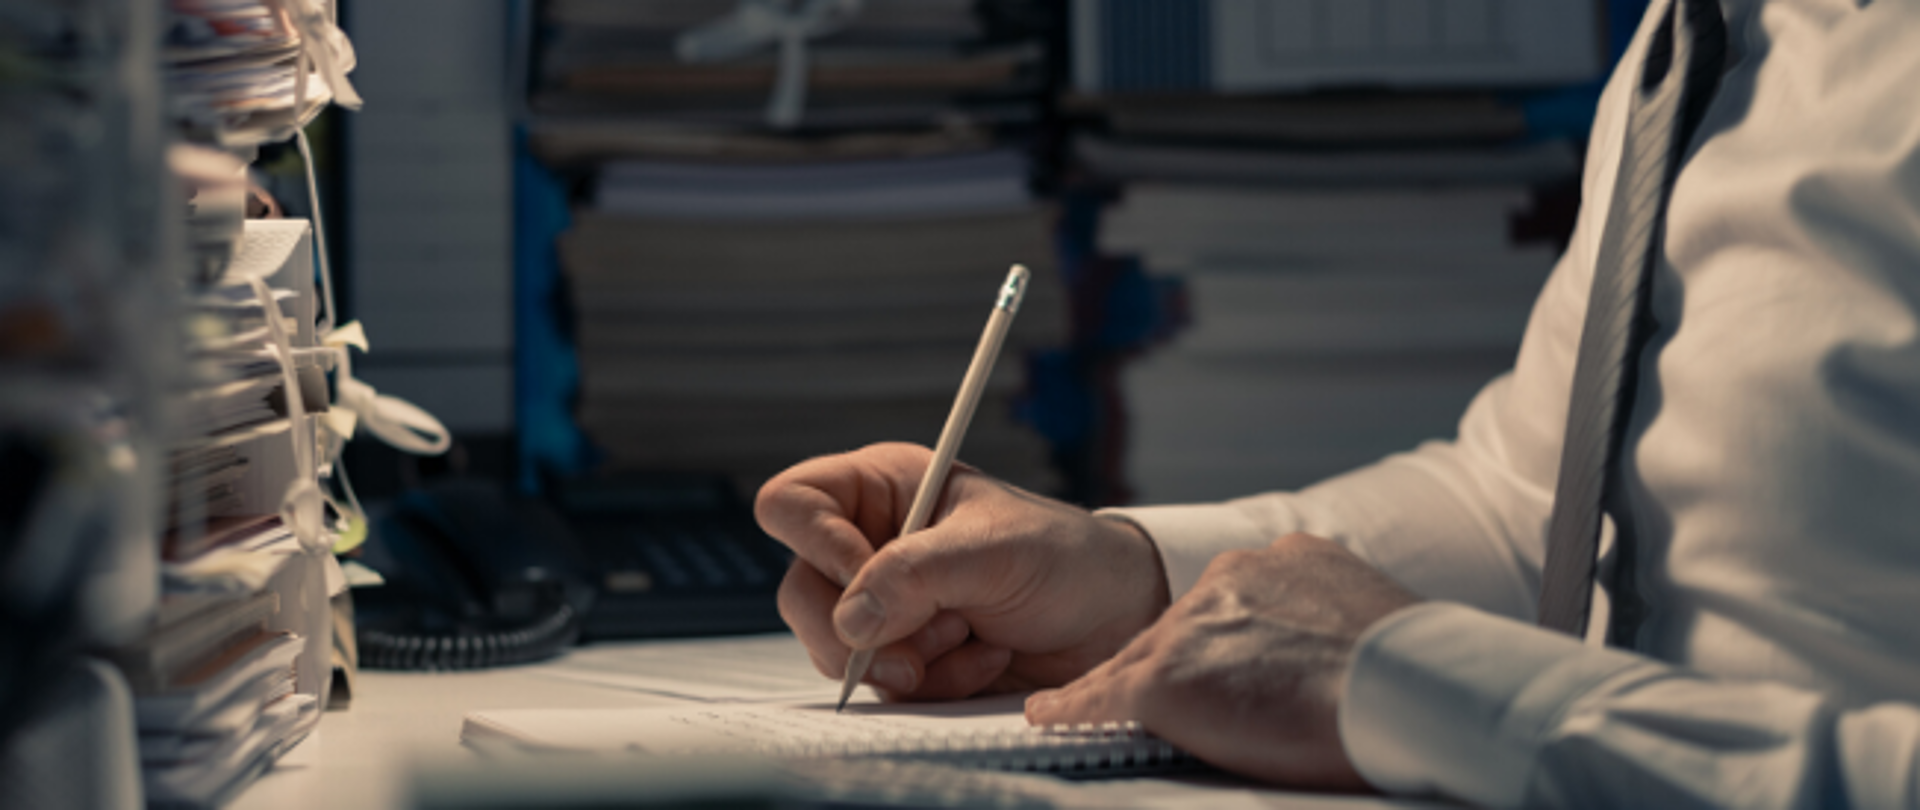 Mężczyzna w białej koszuli pisze w notesie ołówkiem